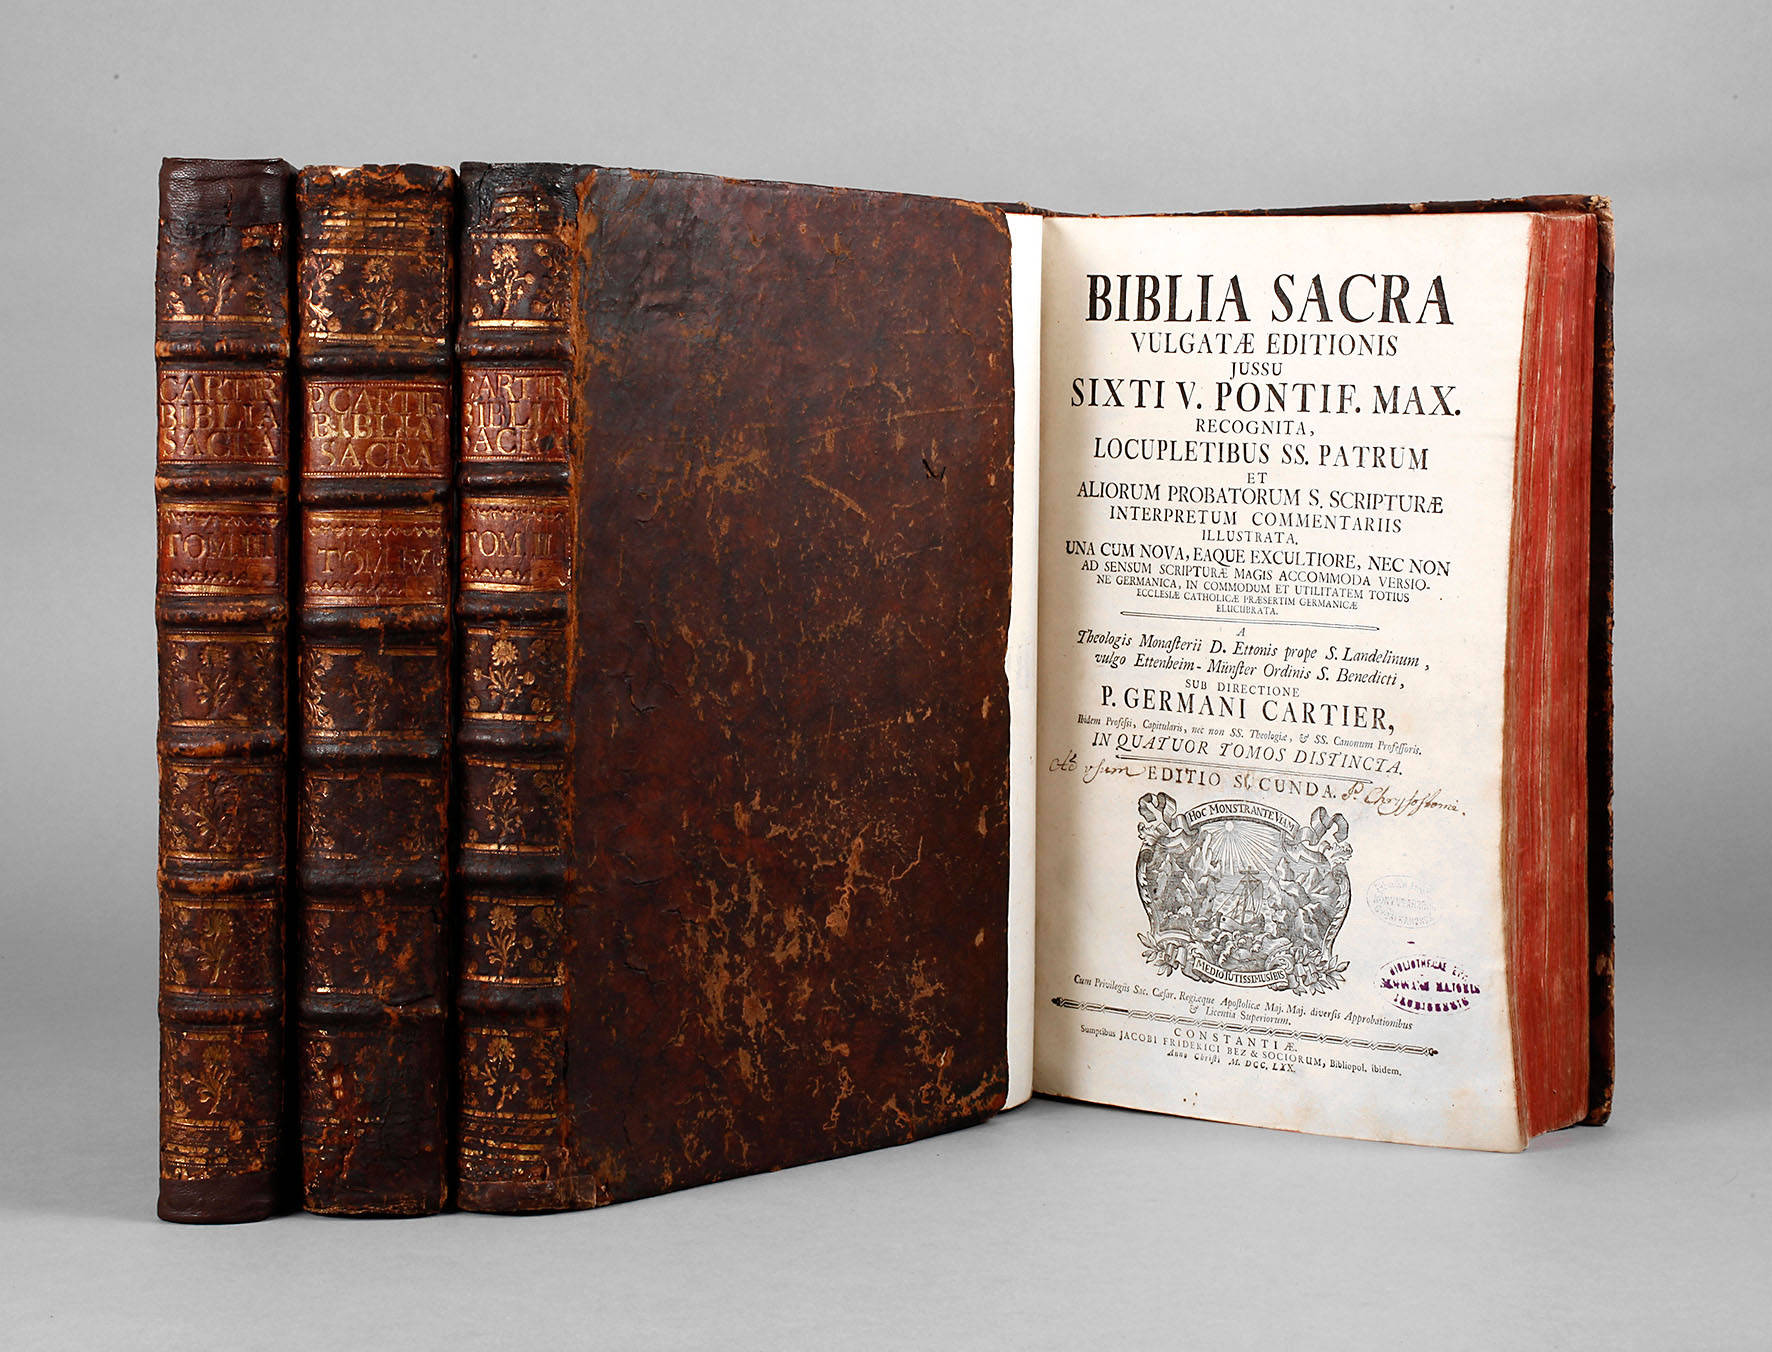 Cartier-Bibel 1770